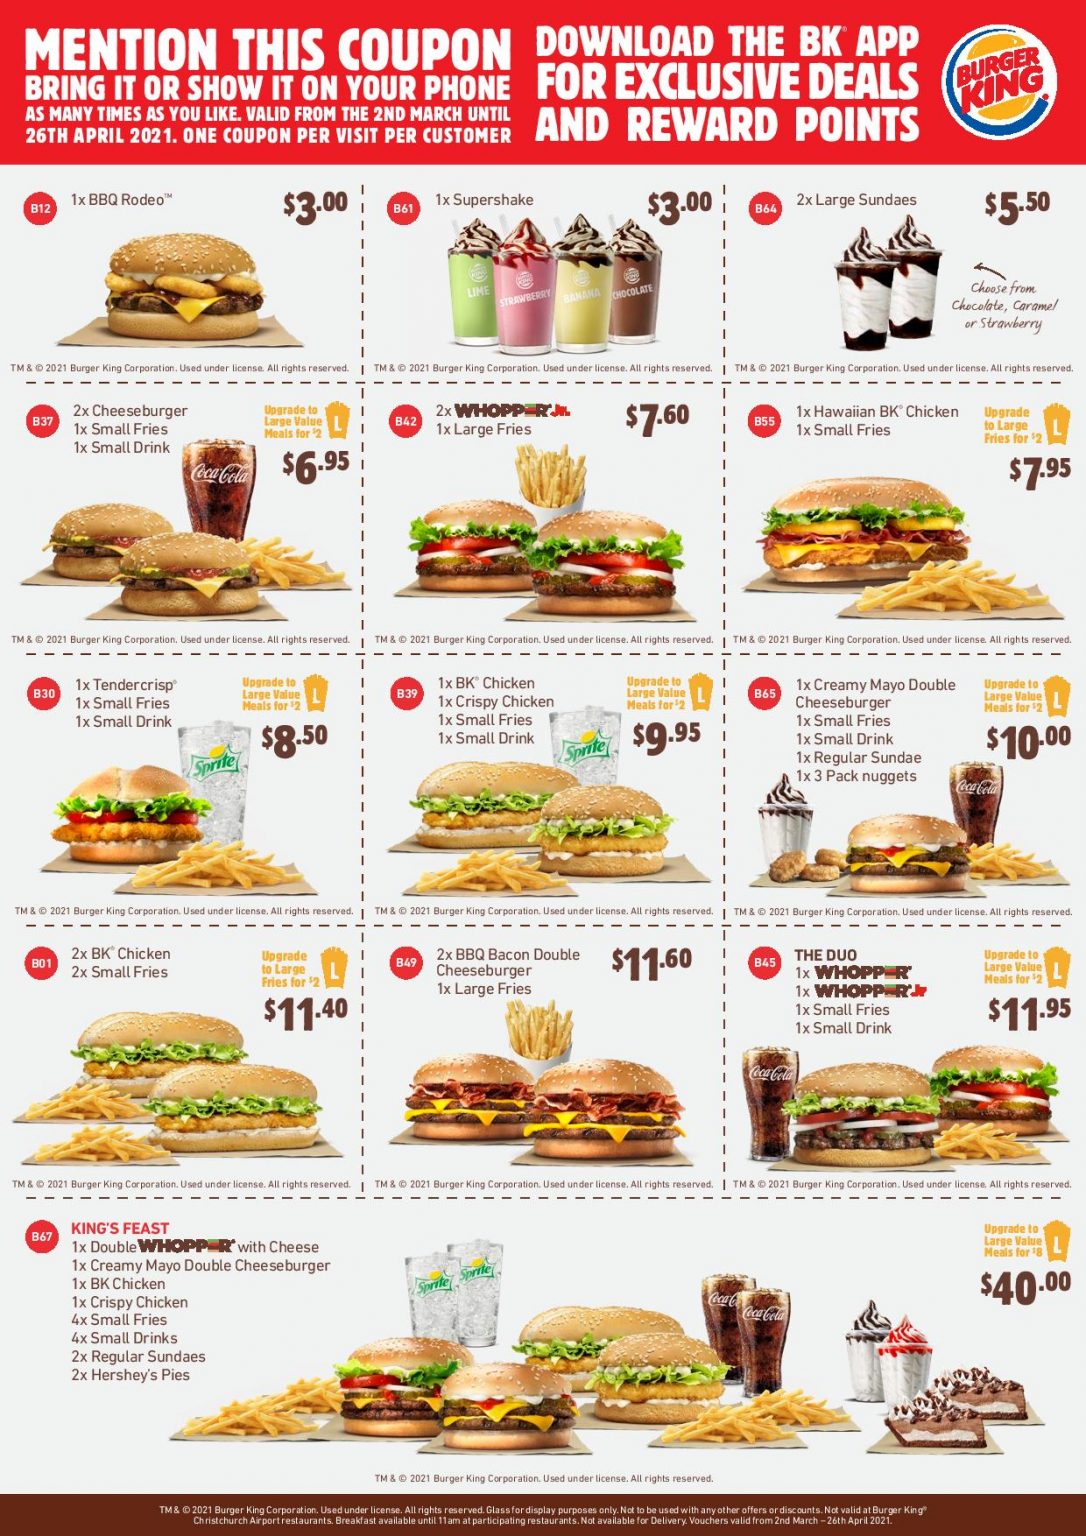 DEAL Burger King New 5 Meals (Creamy Mayo Cheeseburger, Cheeseburger